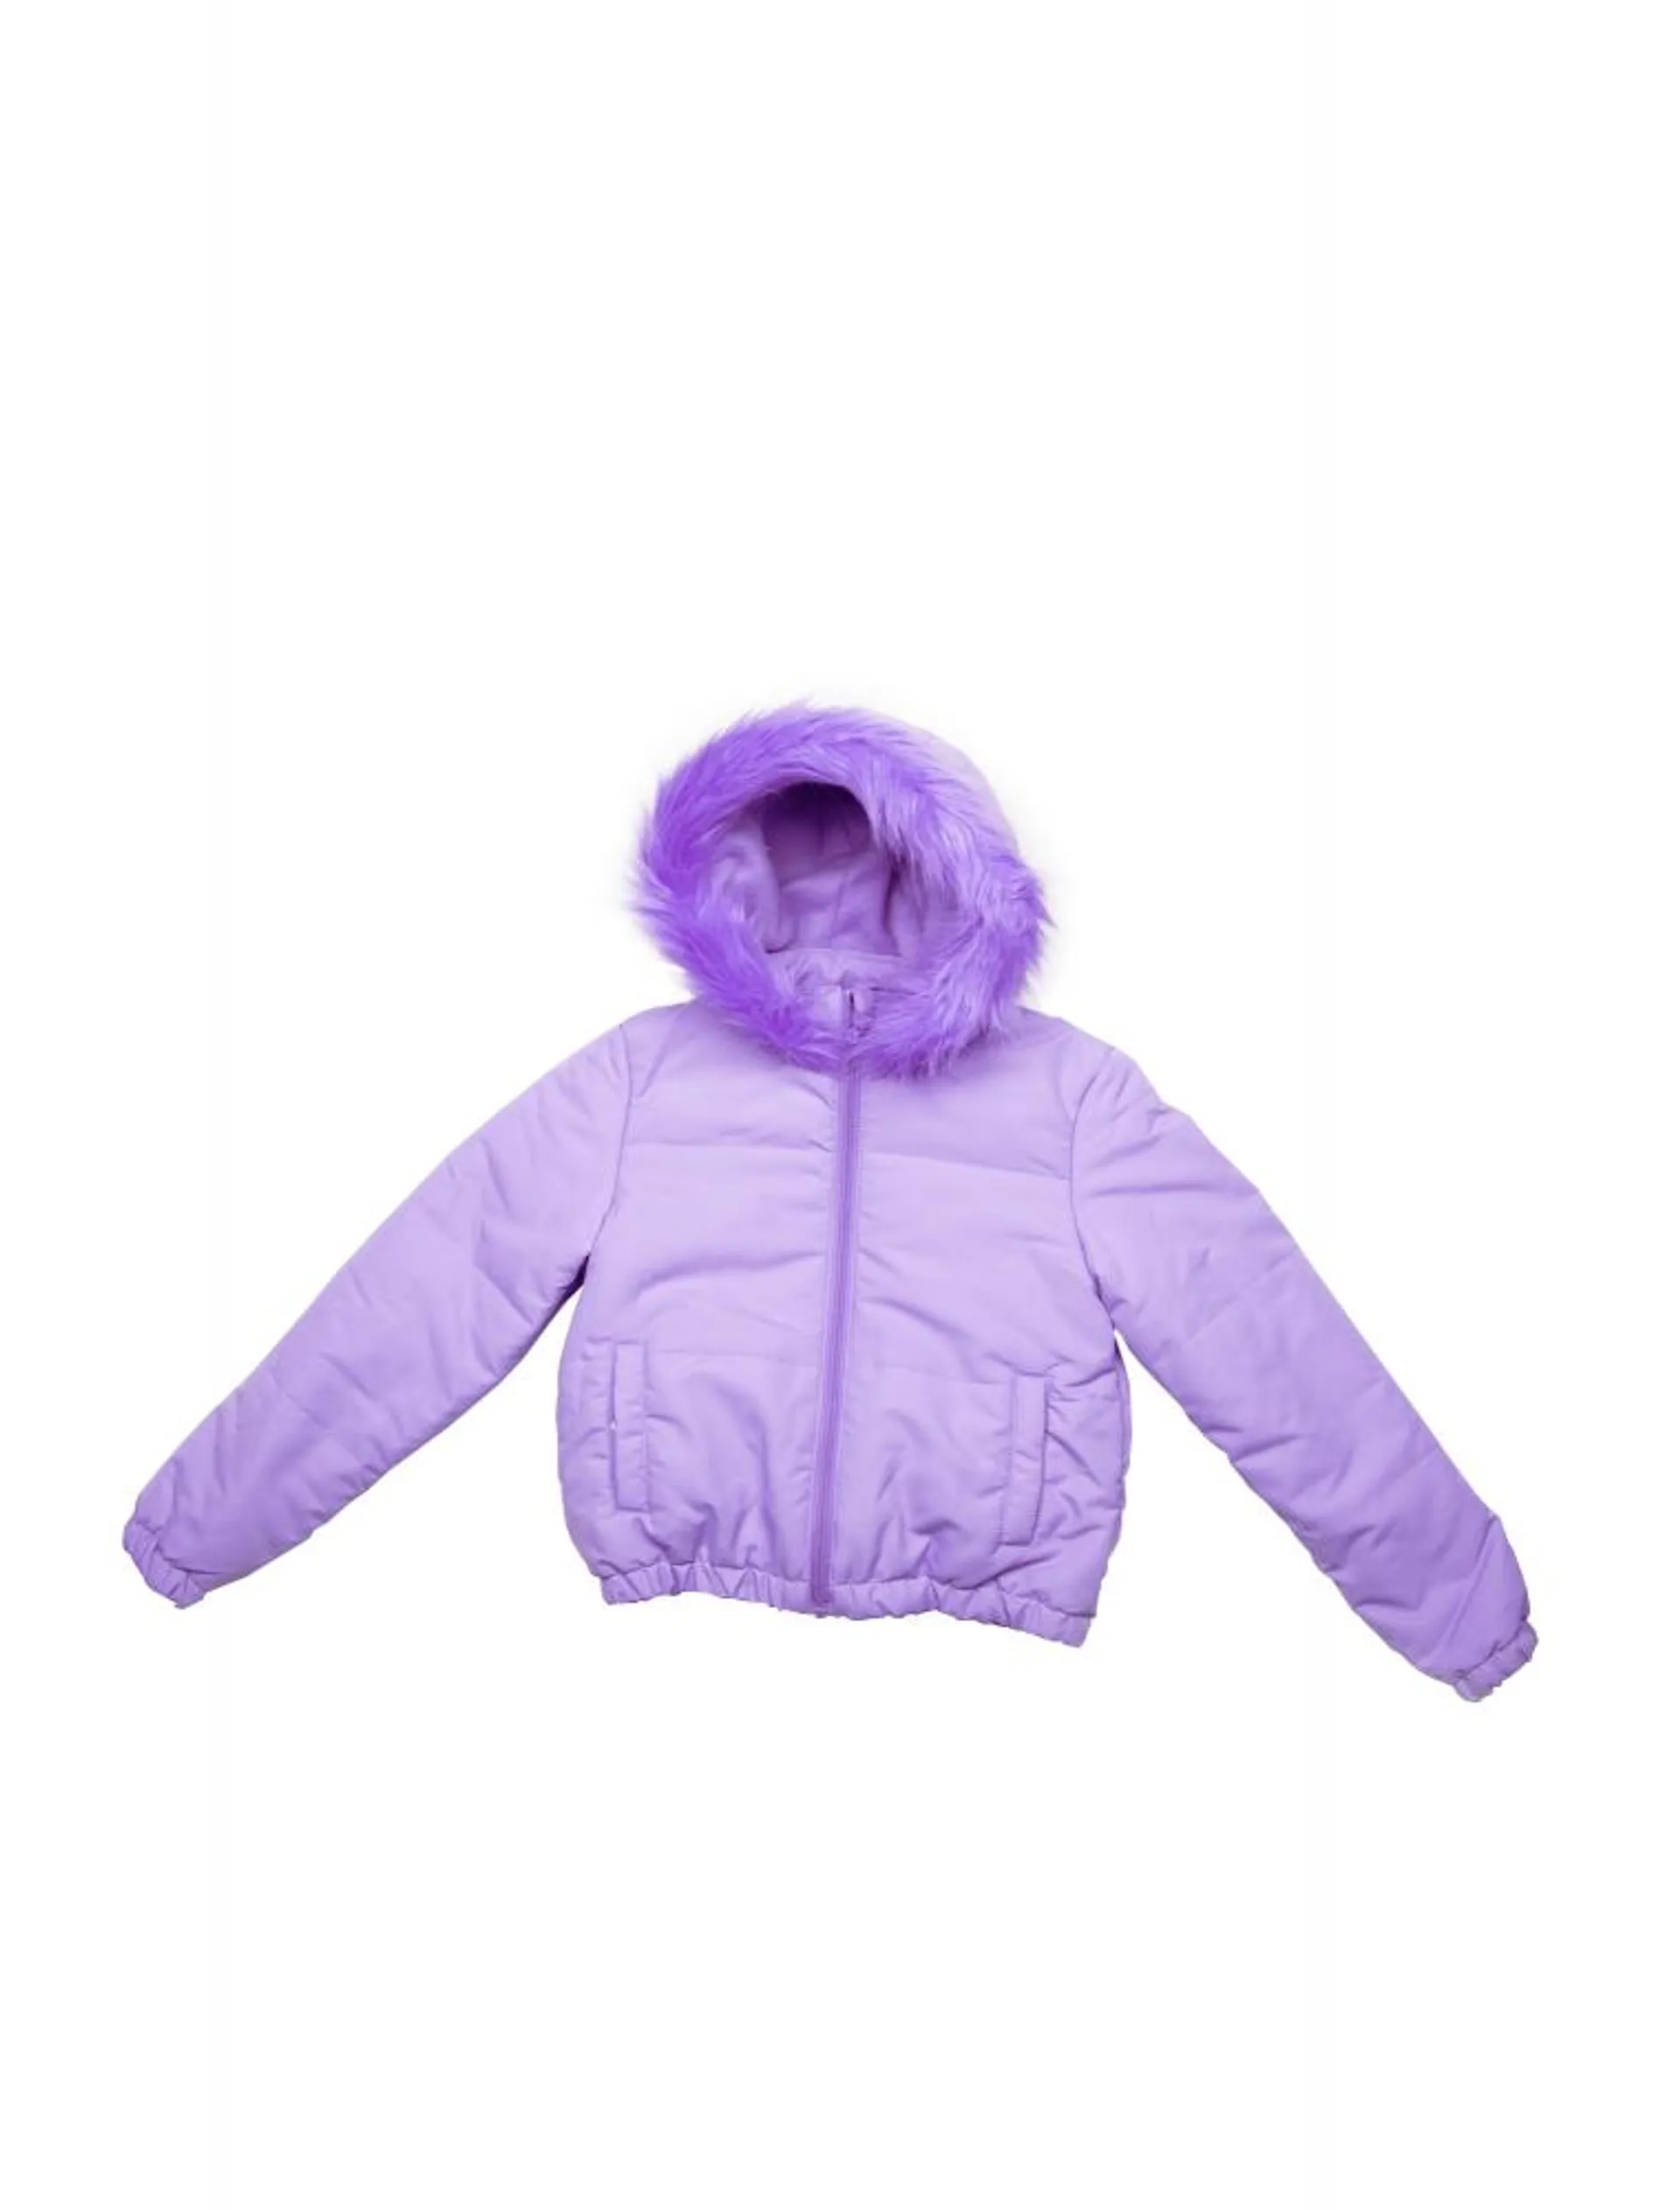 Jacheta de iarna cu gluga BPC, pentru fetite, inchidere cu fermoar, Lila